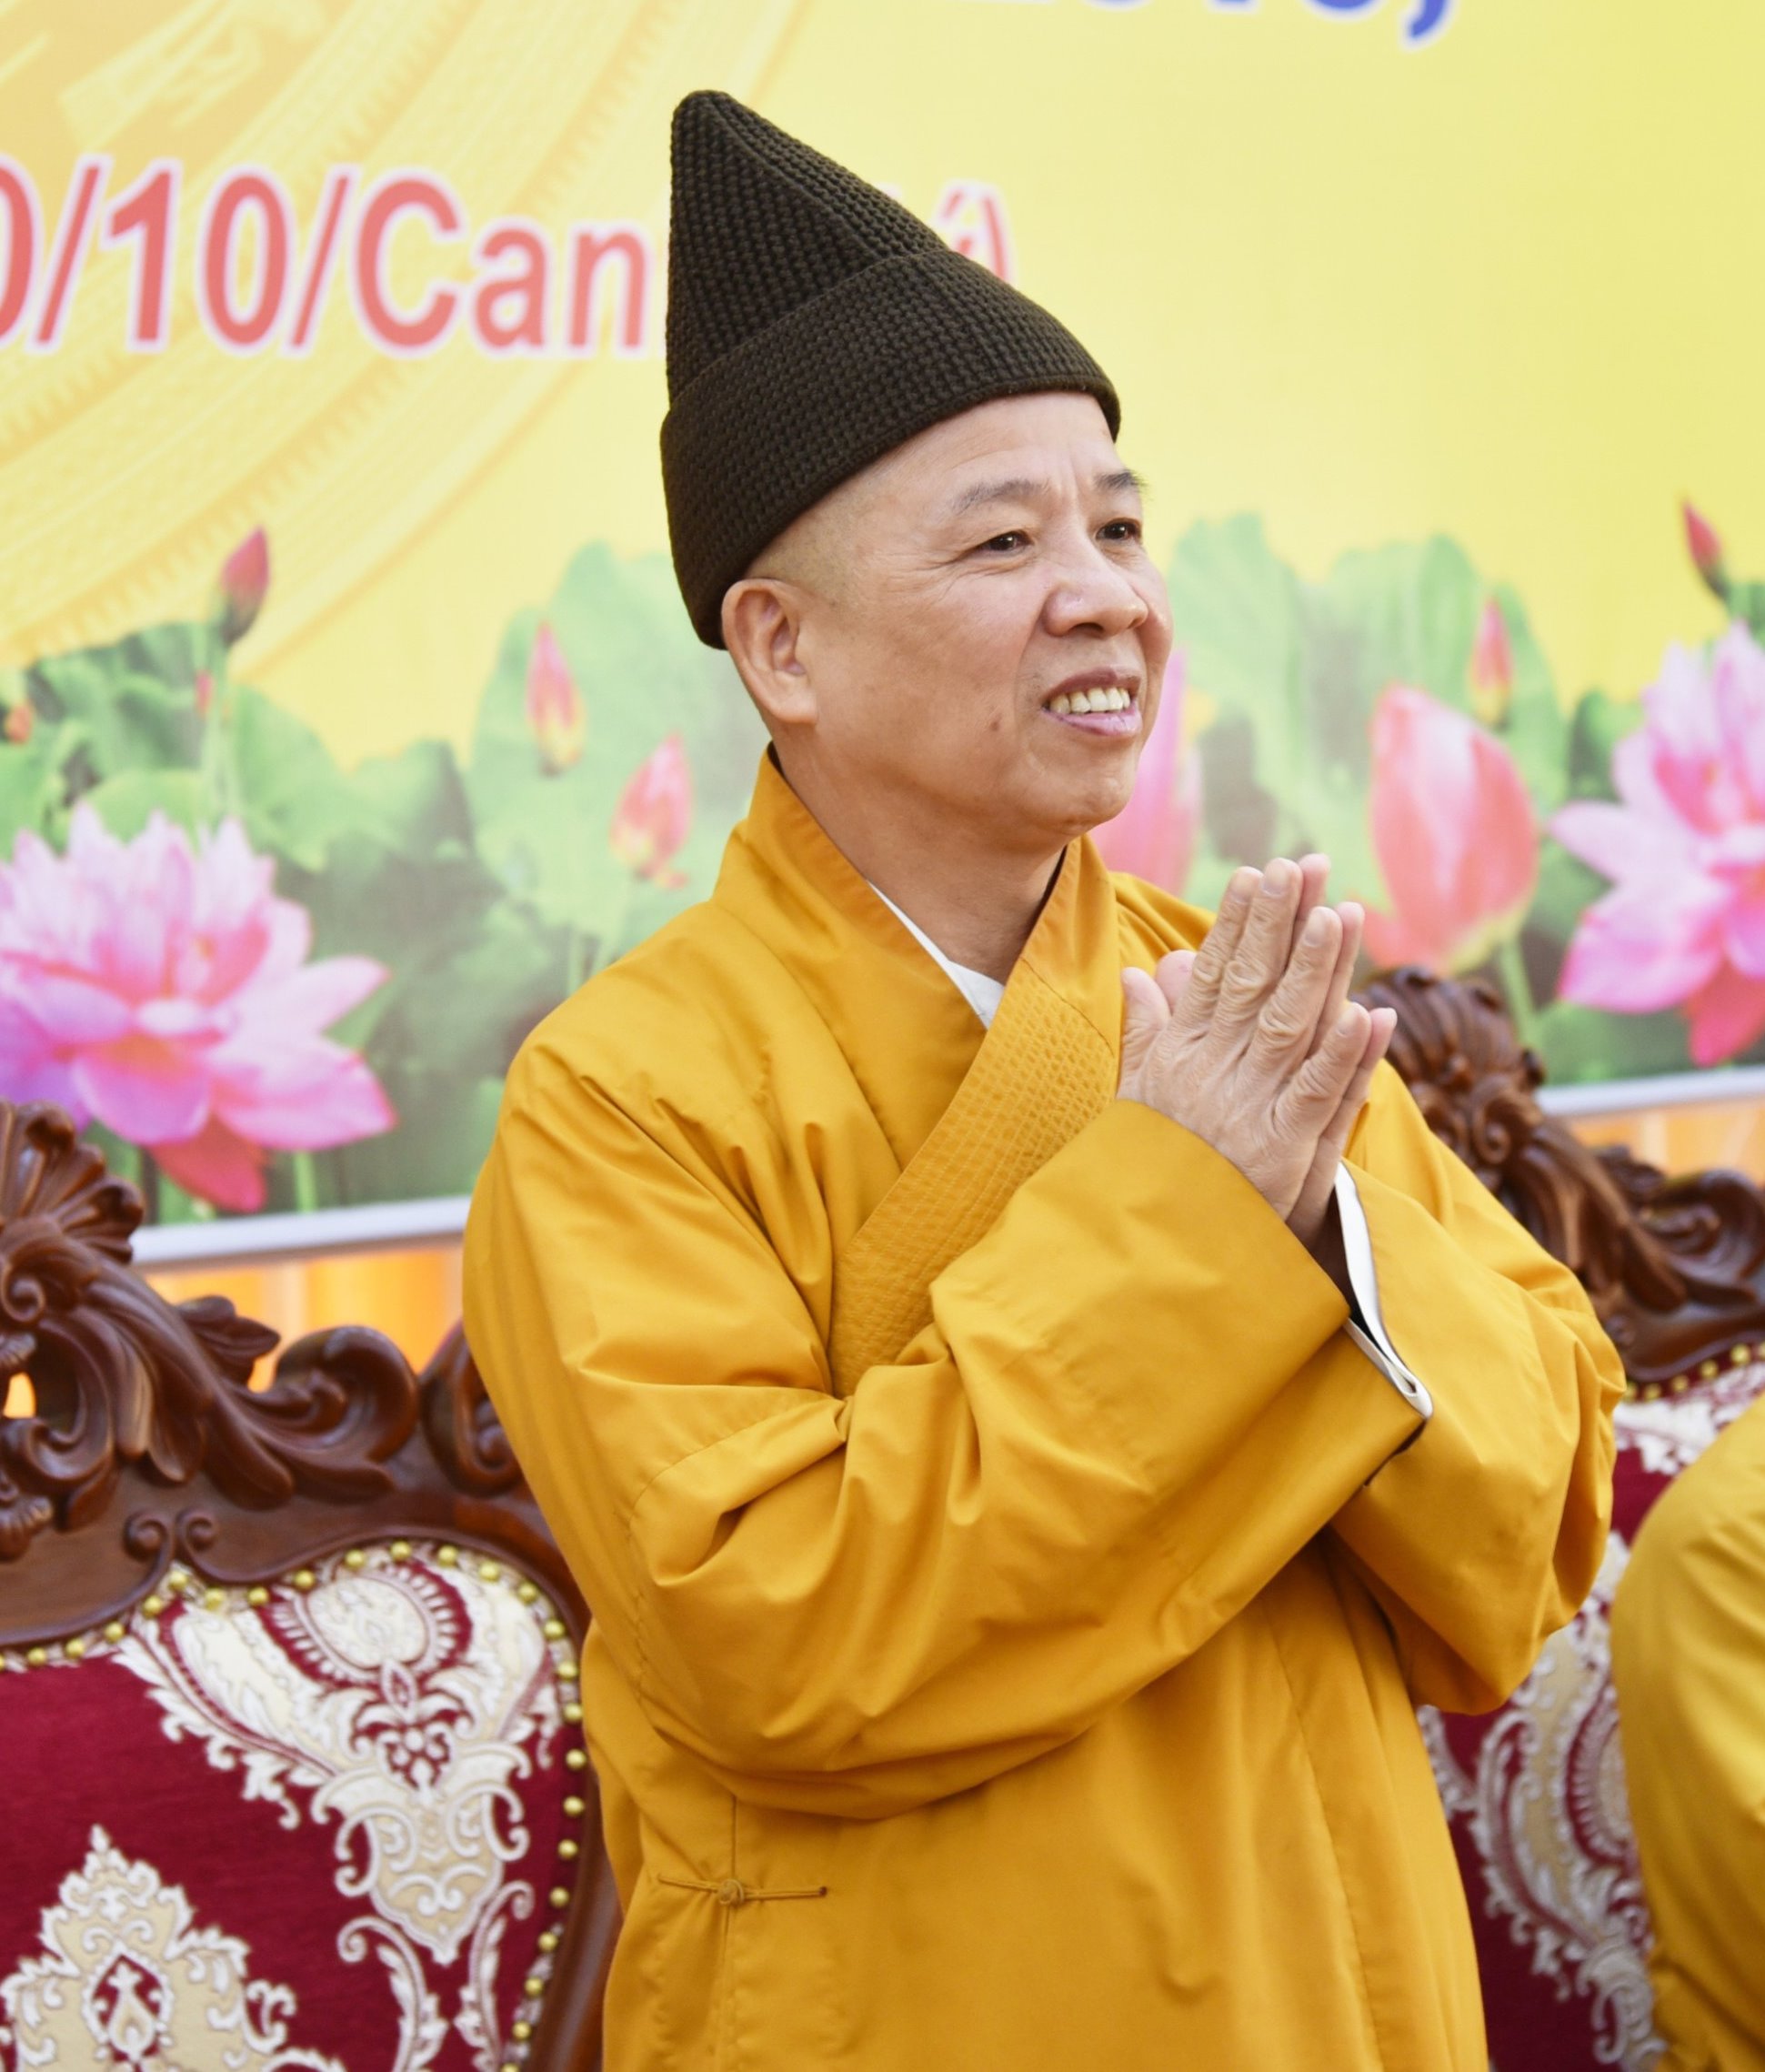 Chư Tôn đức Phật giáo Quảng Ninh được tấn phong giáo phẩm 